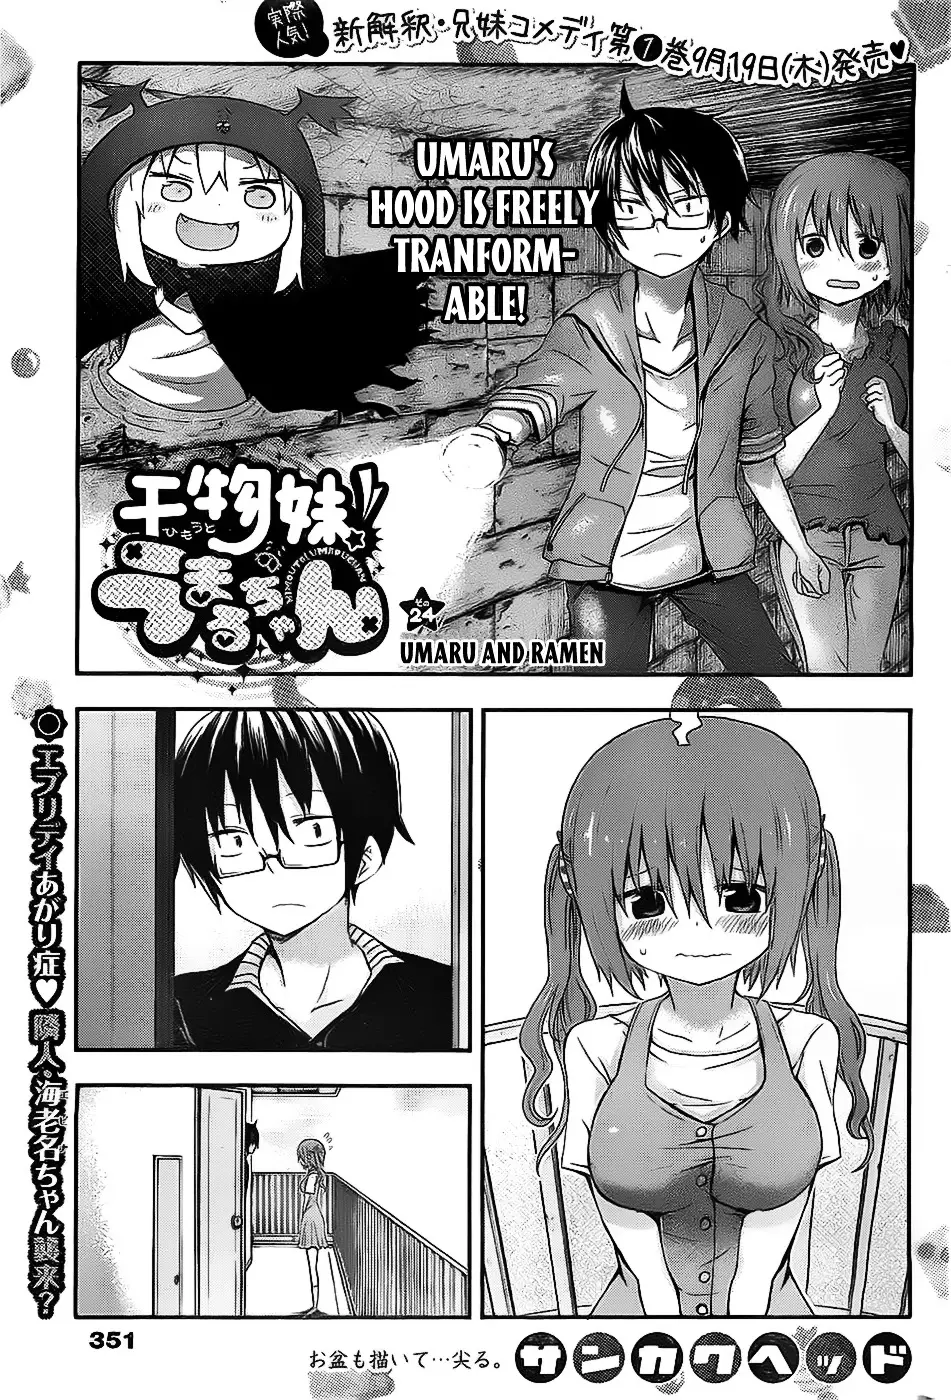 Himouto! Umaru-Chan - 24 page 1